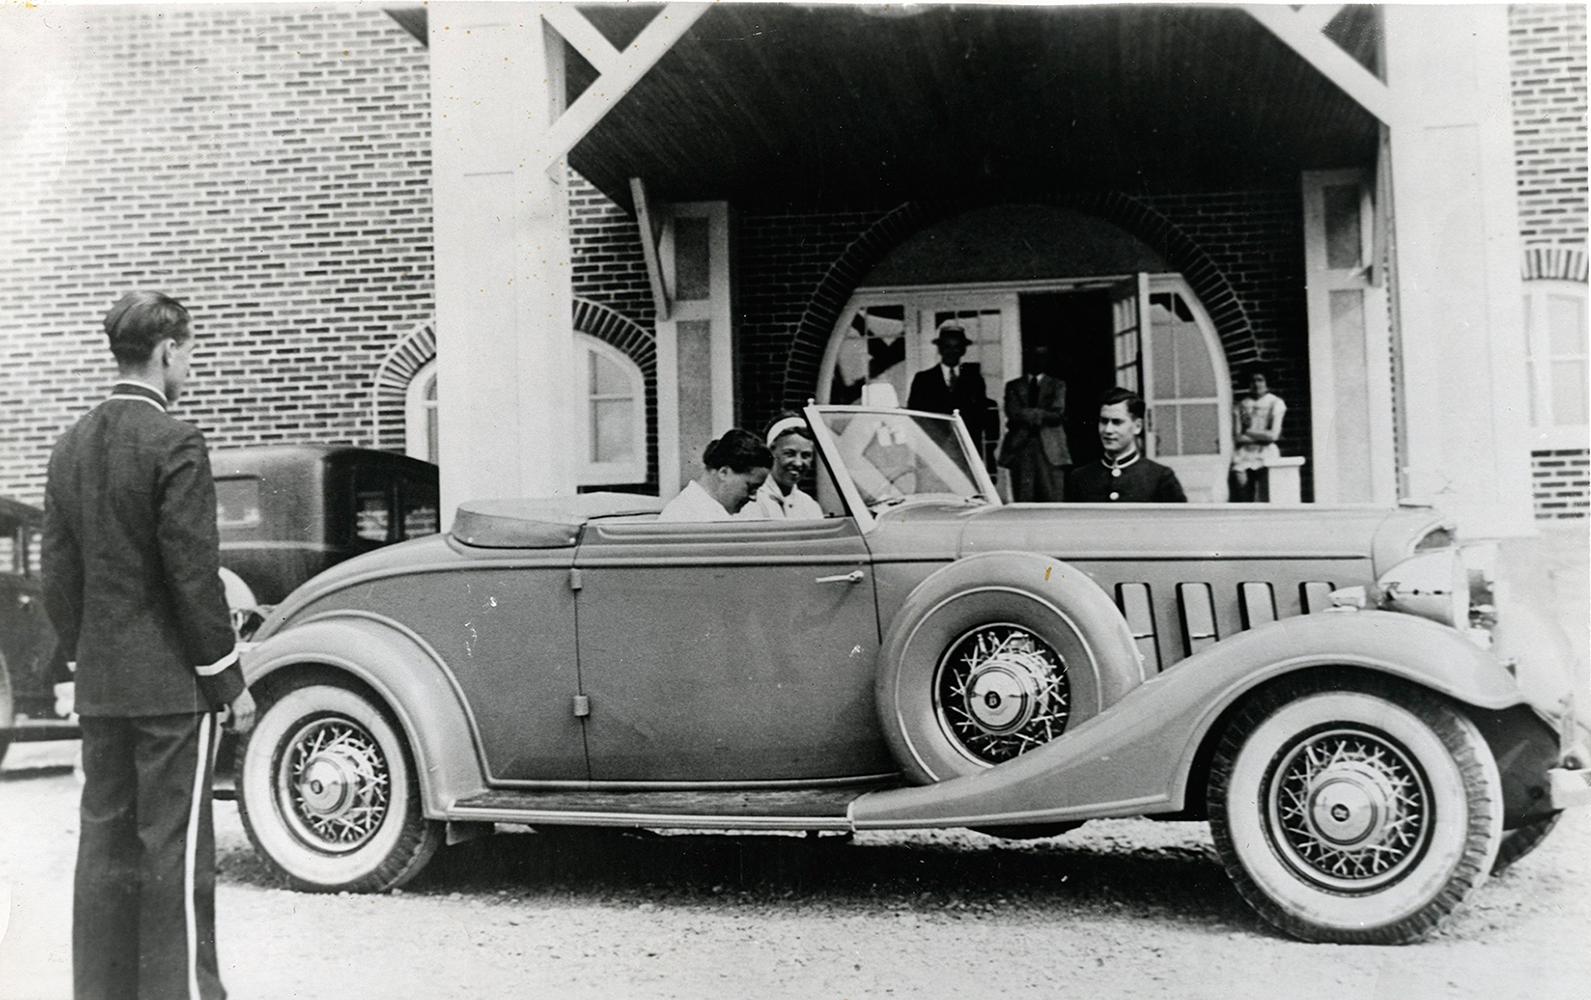 Photographie noir et blanc. Dans une Buick convertible, deux femmes, Eleanor Roosevelt et son amie Lorena Hickok s’apprêtent à partir. La voiture est stationnée à l’avant de l’hôtel La Belle Plage de Matane. Un valet de l’hôtel attend leur départ. 